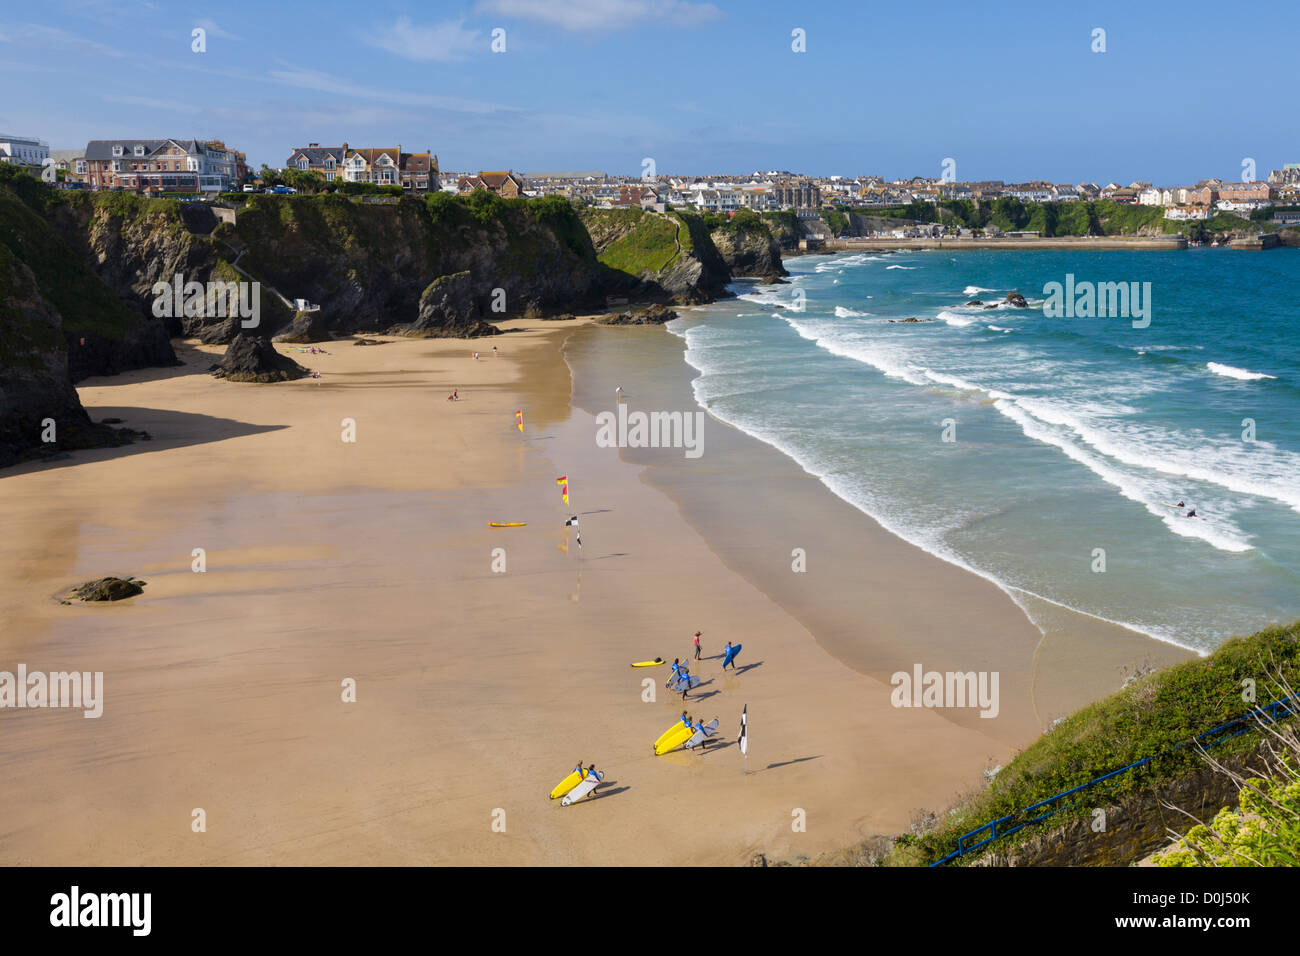 Les surfeurs sur la plage au Great Western beach, Newquay, Cornwall, Angleterre Banque D'Images